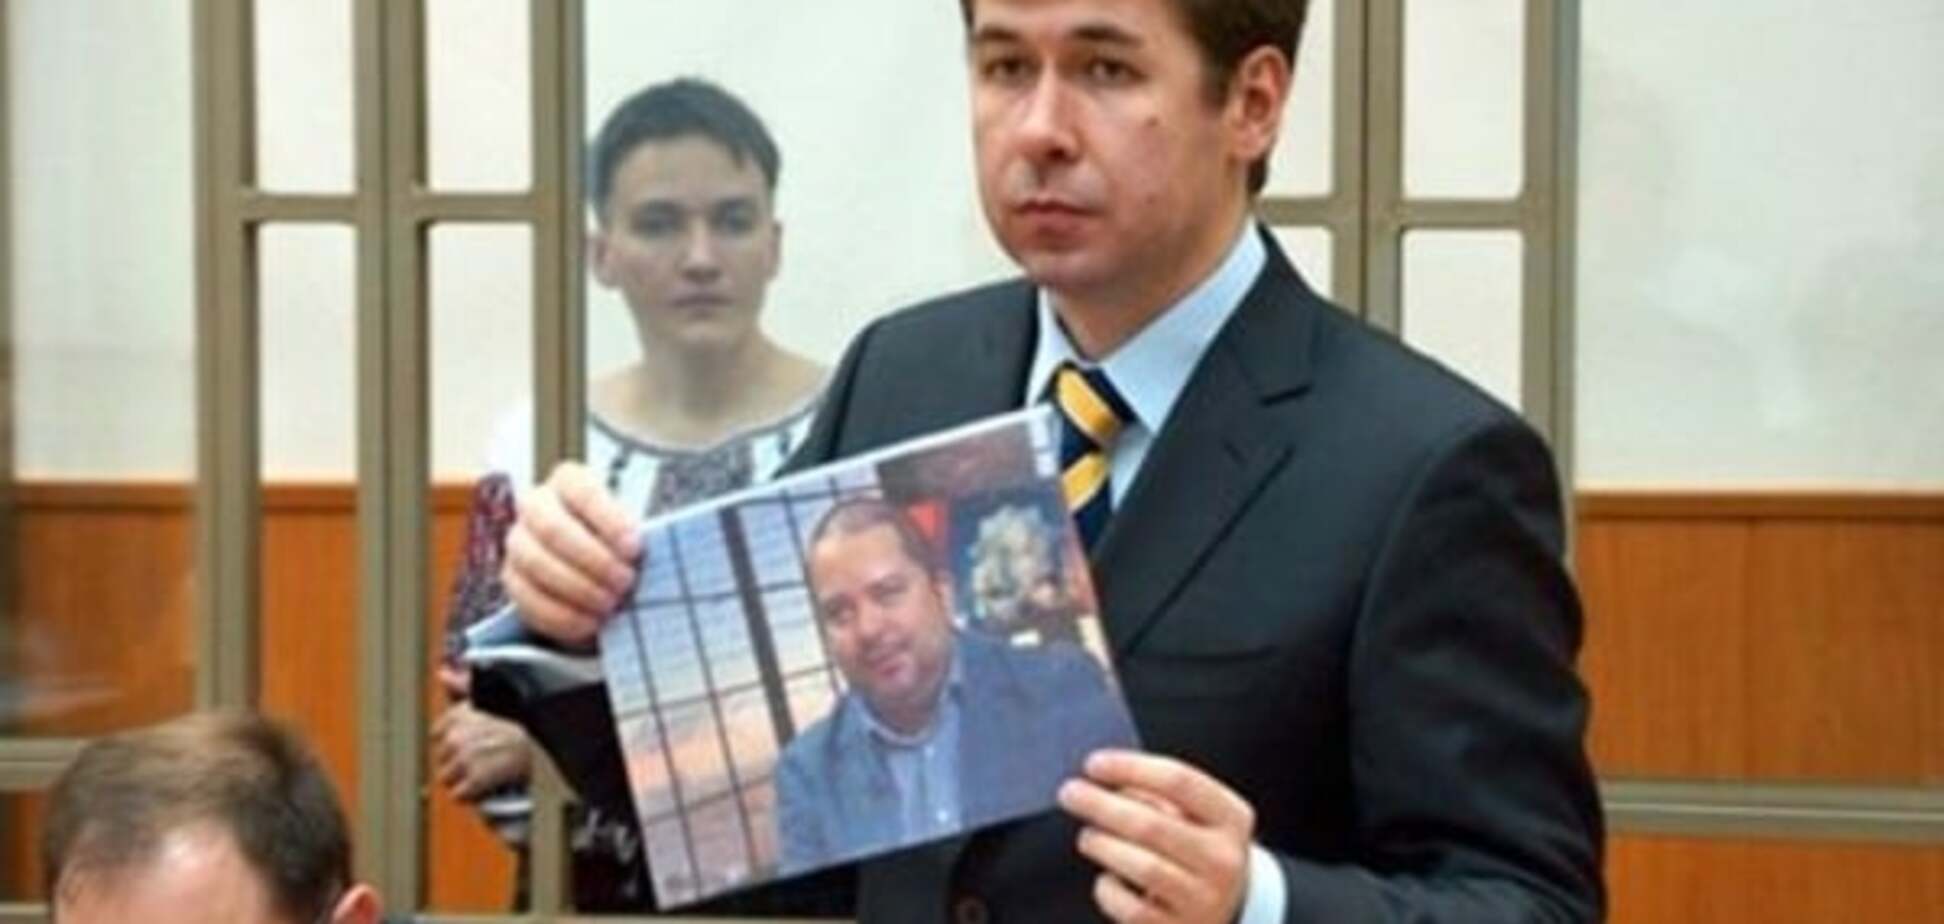 Експертиза підтвердила, що адміністрація Путіна і ФСБ причетні до справи Савченко - адвокат